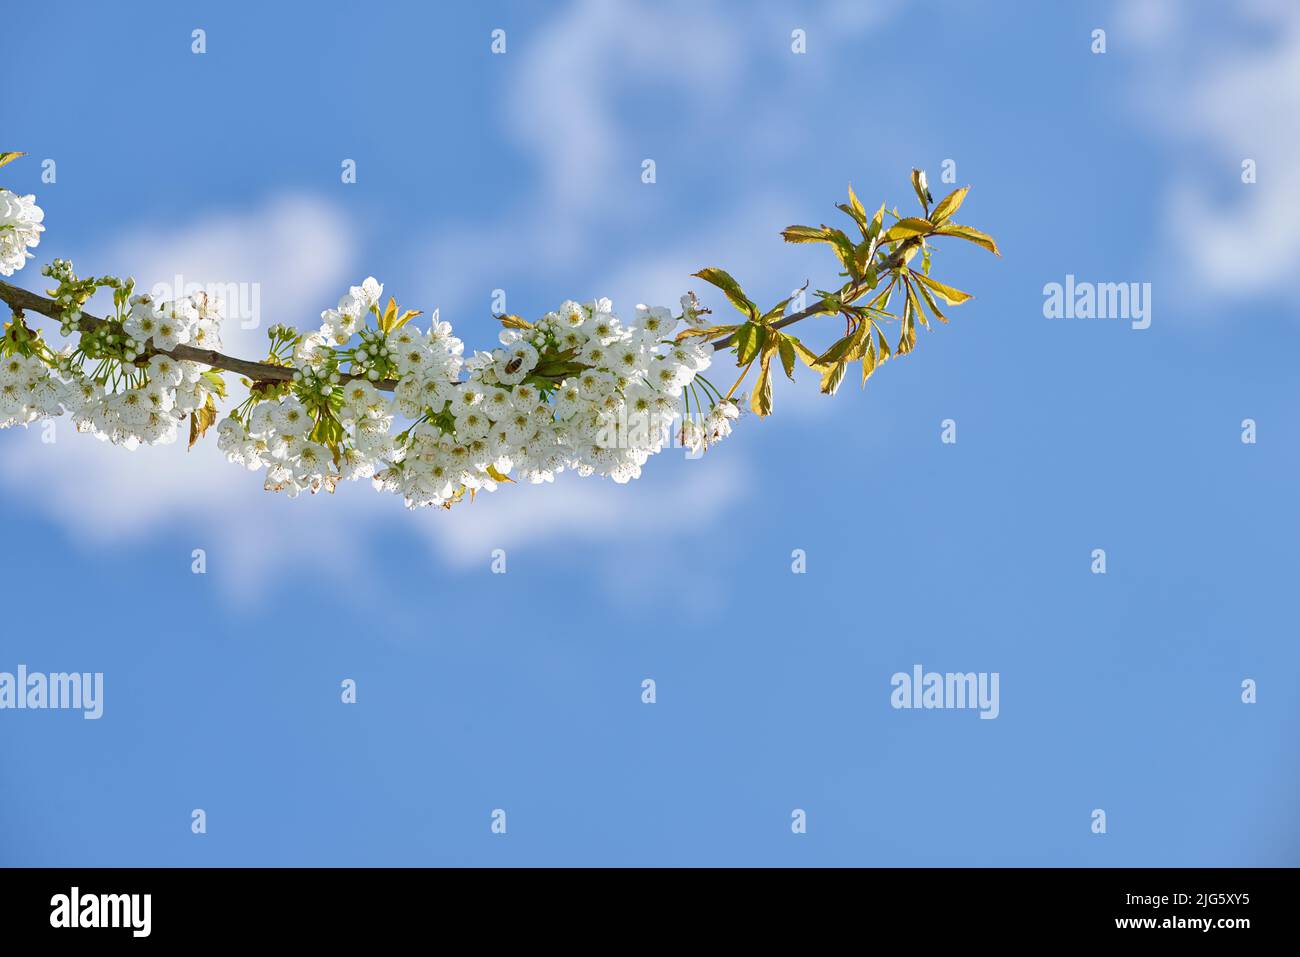 Reine weiße Mirabelle oder Prunus Domestica Blumen wachsen auf einem Pflaumenbaum in einem Garten von unten auf einem blauen Himmel Hintergrund mit Copyspace. Nahaufnahme Stockfoto